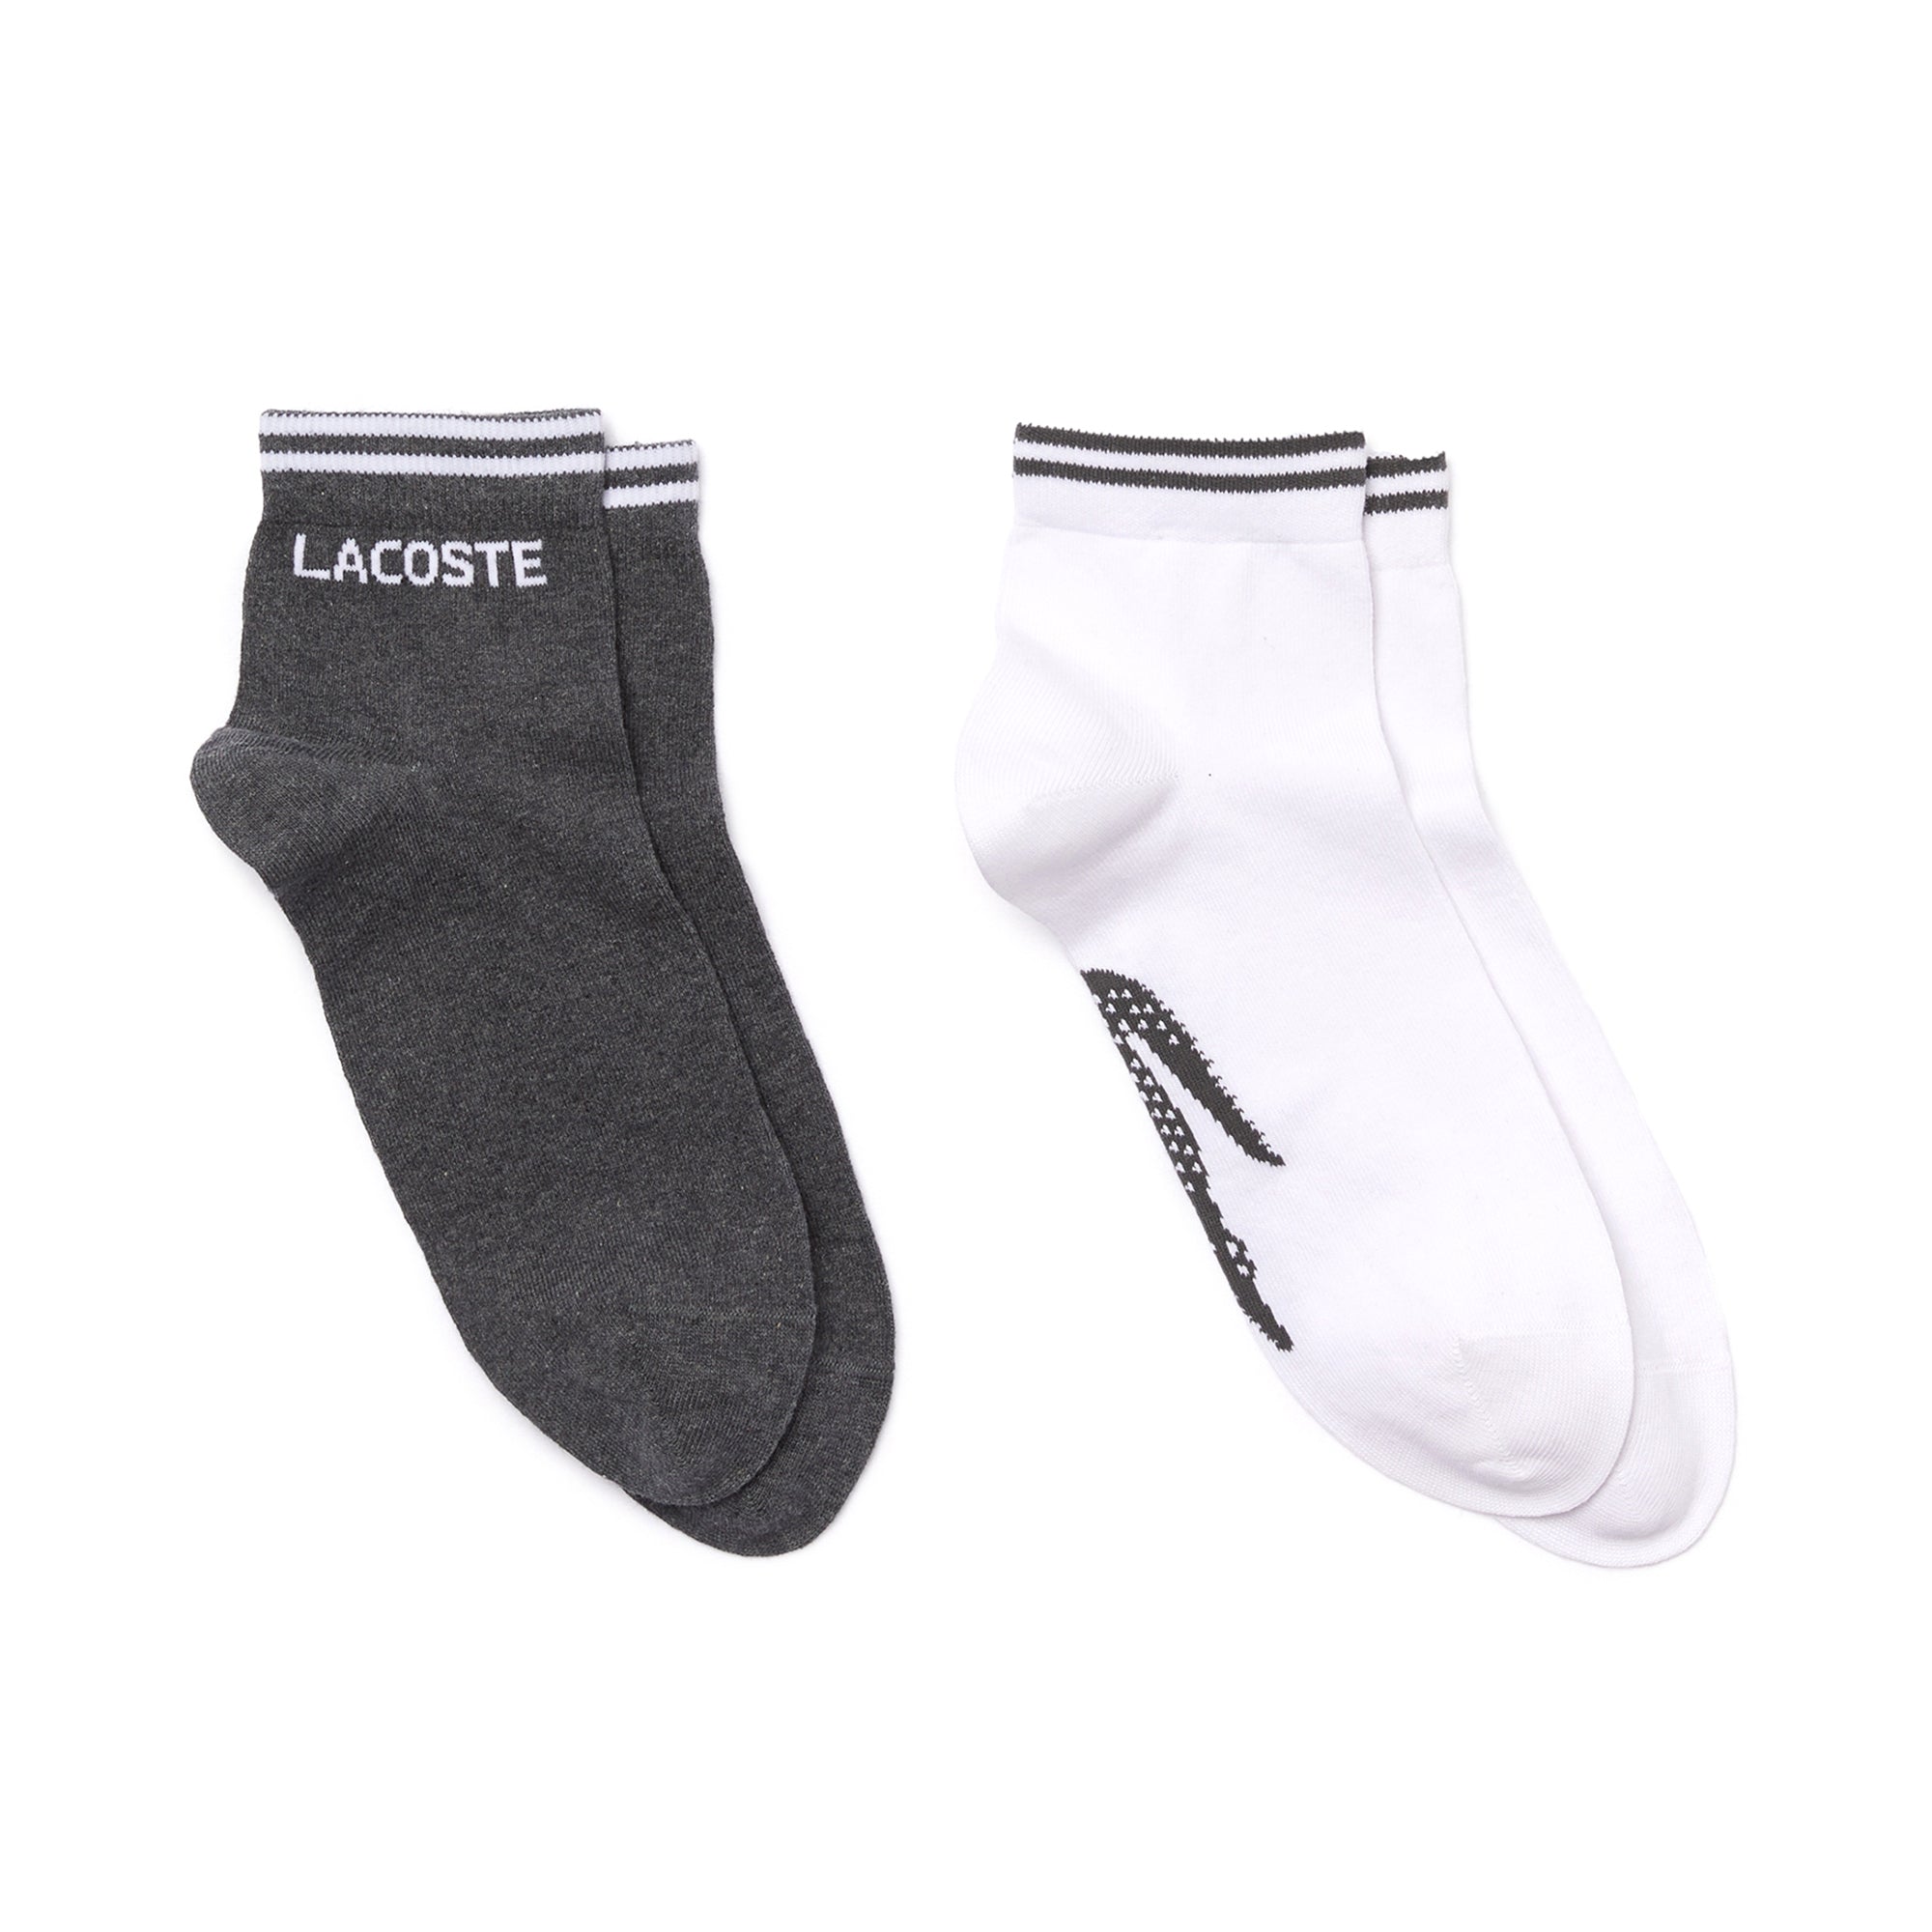 Lacoste 2 Pack Low Cut Socks